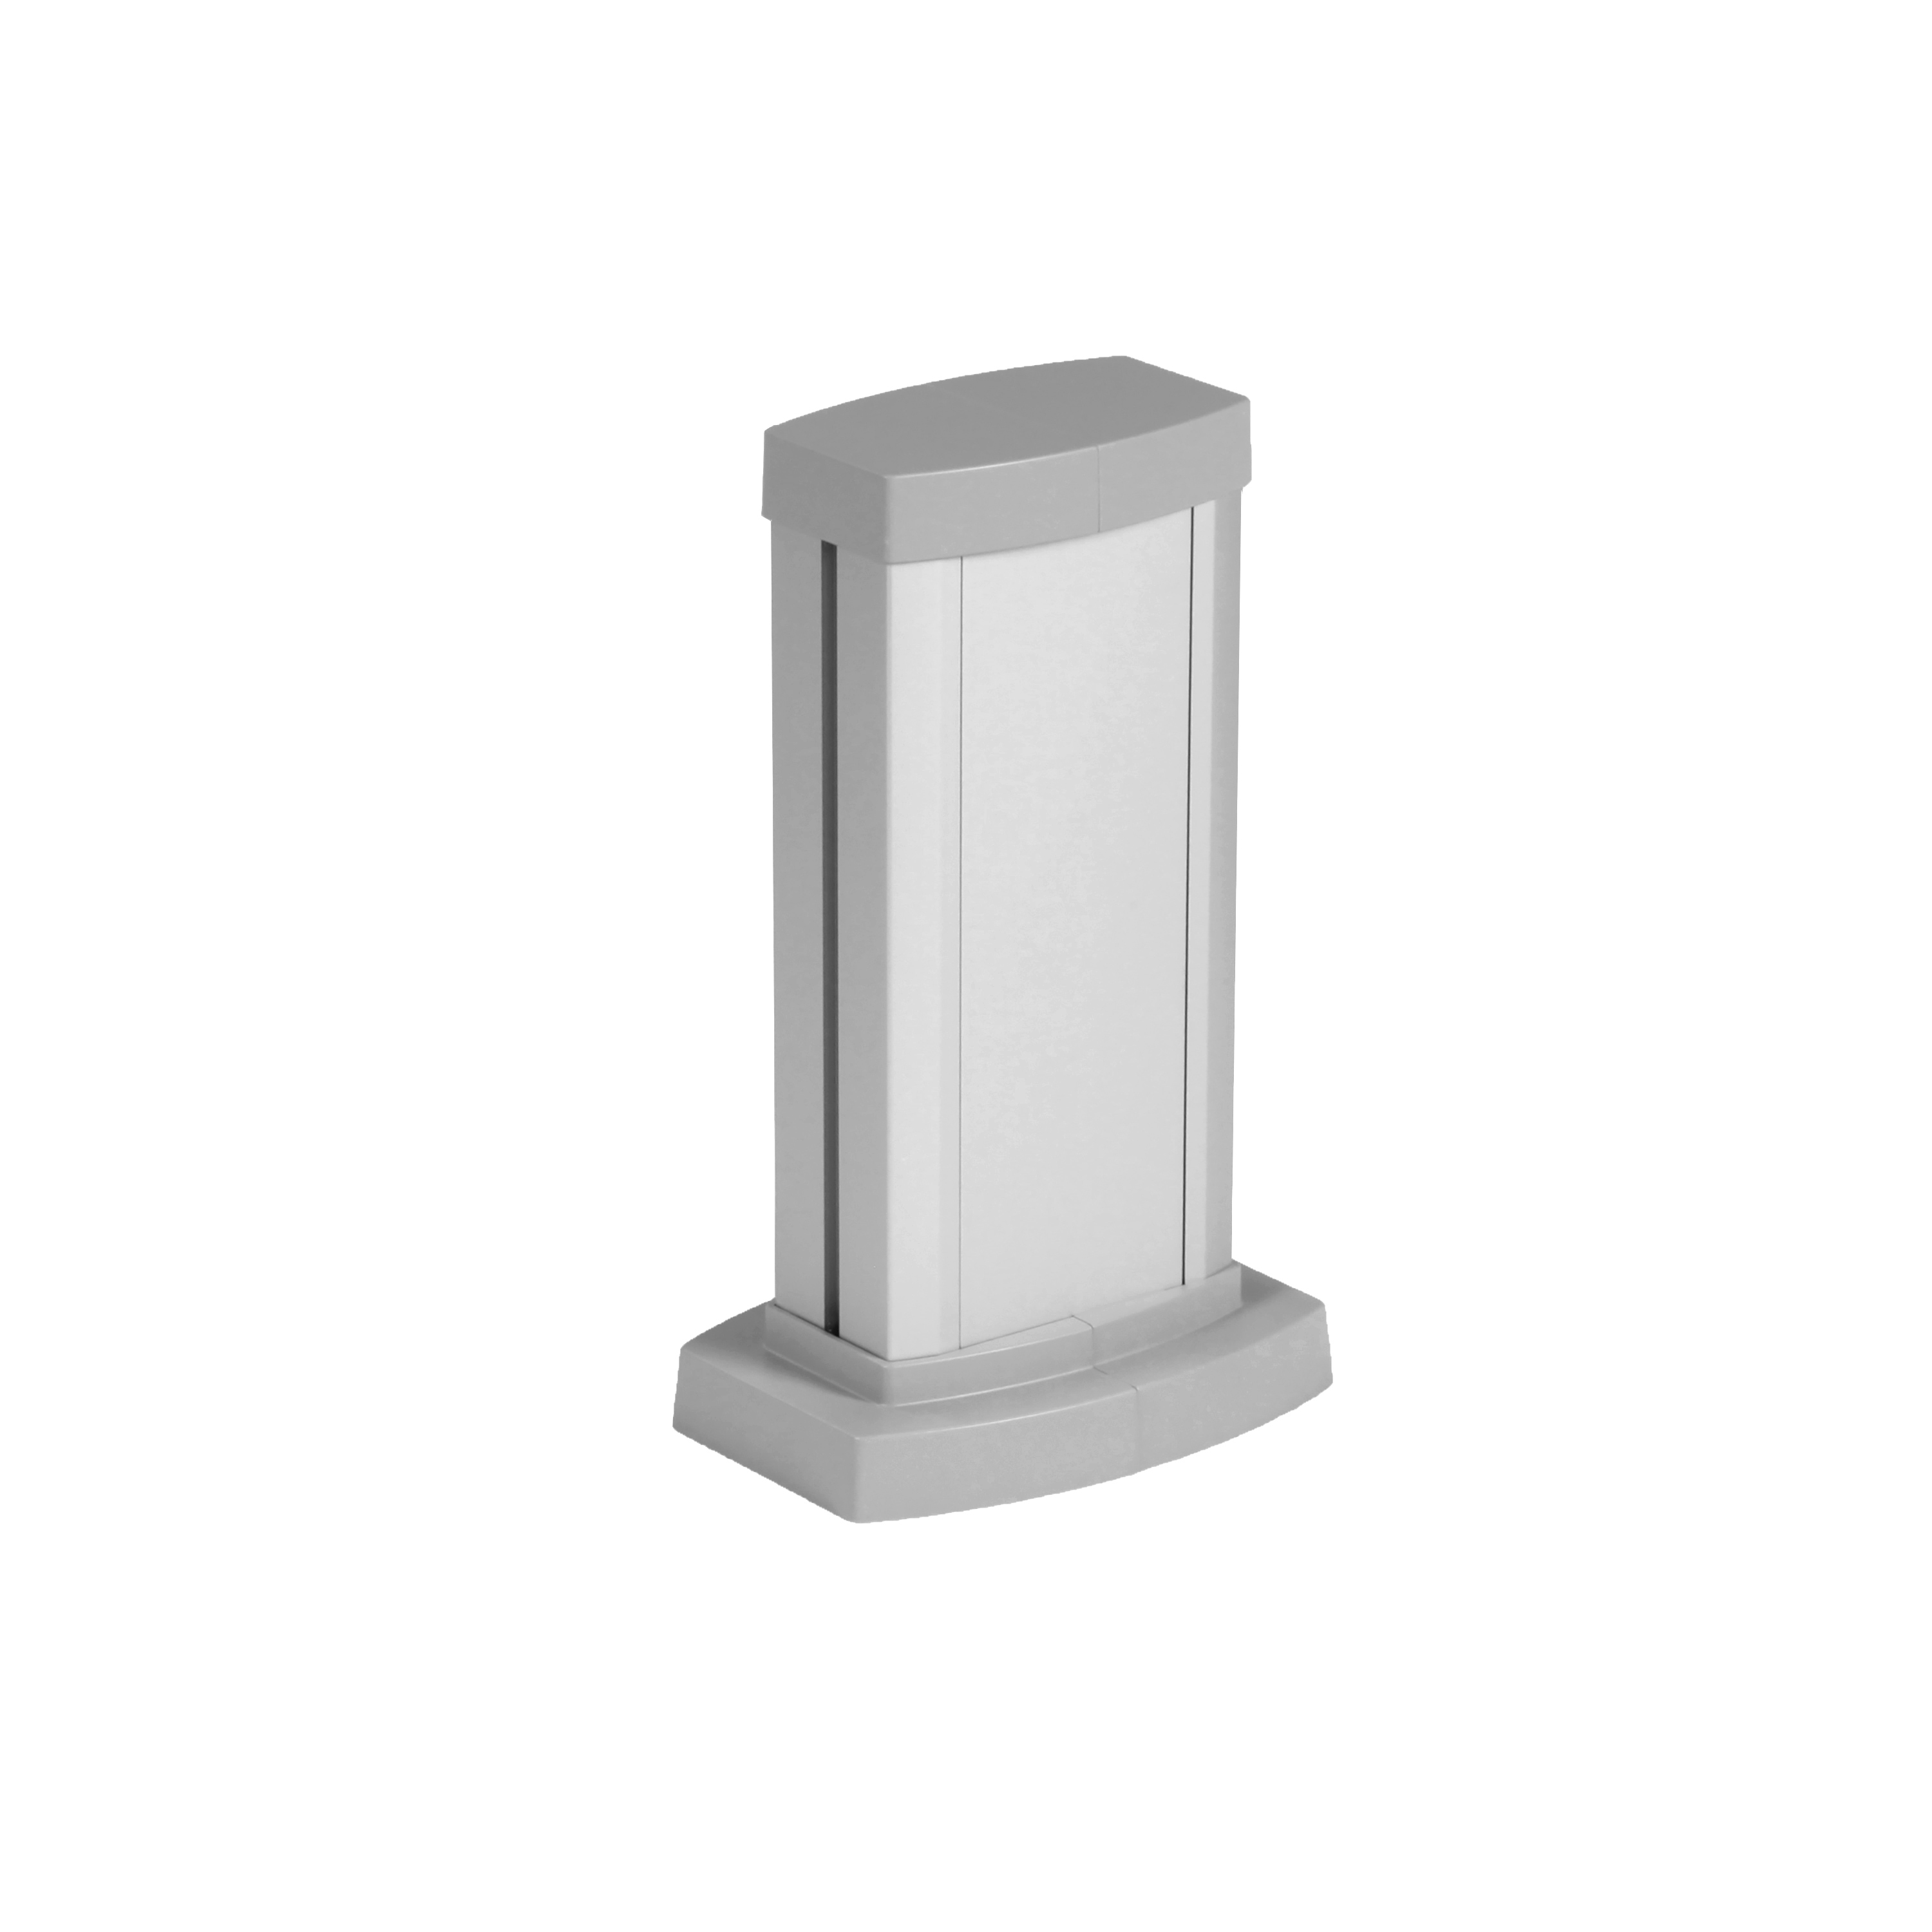 Универсальная мини-колонна алюминиевая с крышкой из алюминия 1 секция, высота 0,3 метра, цвет алюминий 653101 Legrand